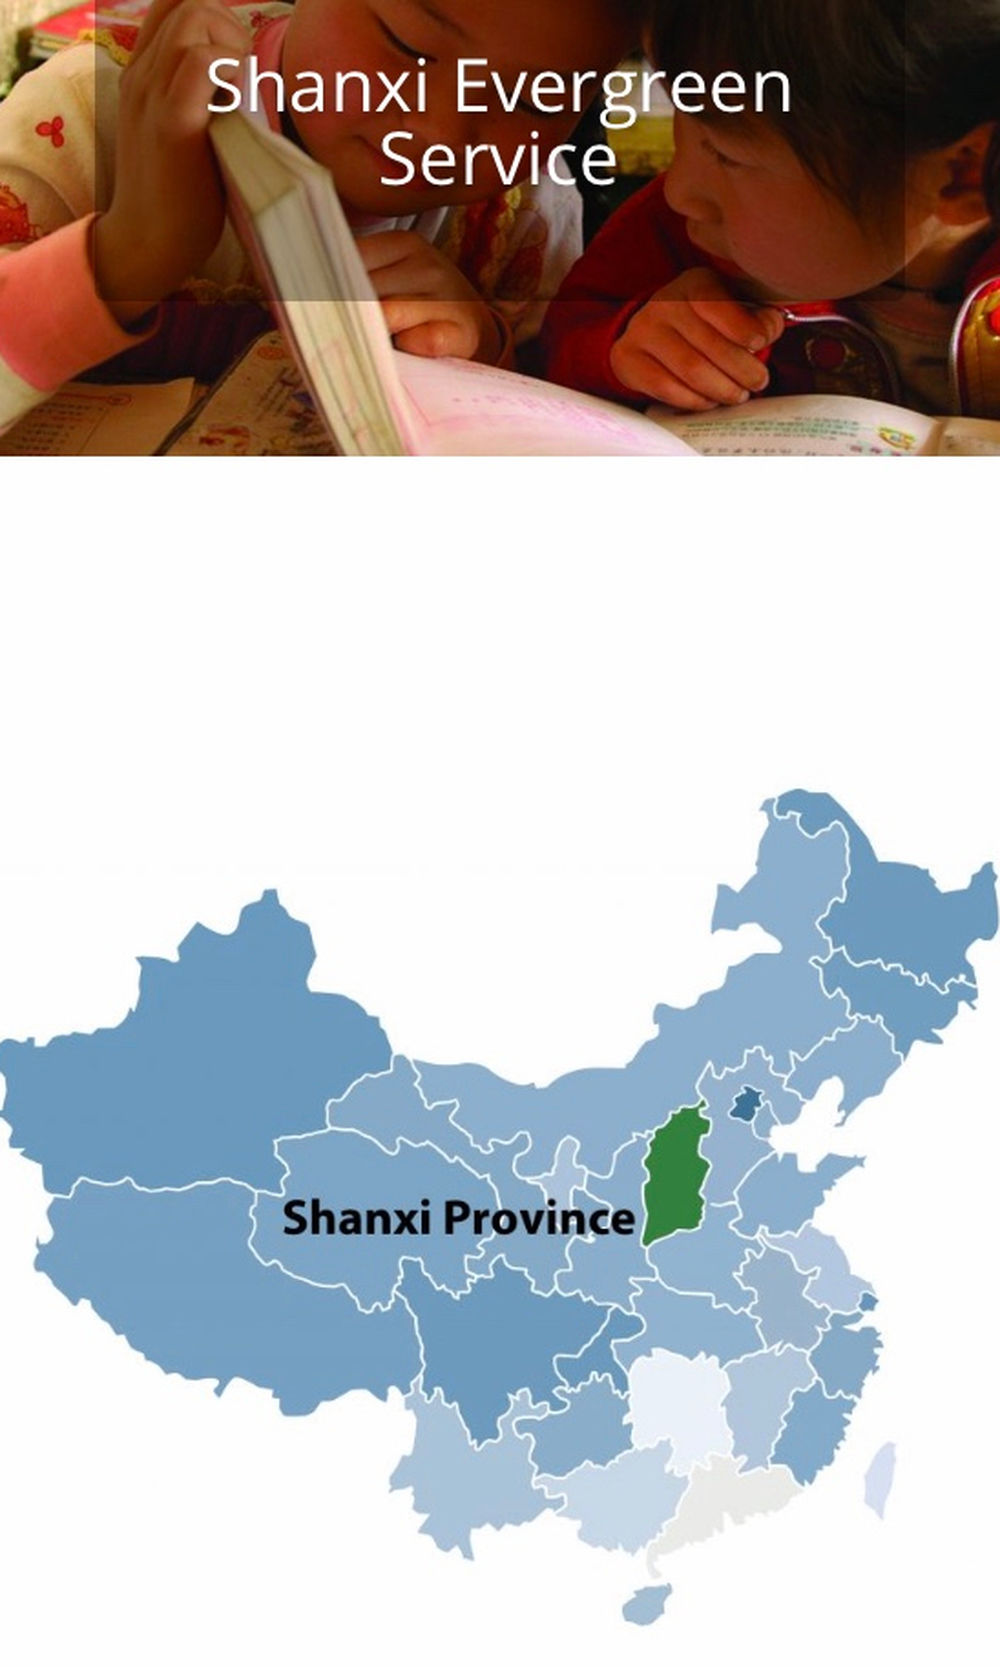 Denne uka har vi fått en fersk rapport fra en av arbeiderne ved Evergreen, virksomheten vi samarbeider med i Kina. 40 millioner mennesker bor i Shanxi der Evergreen holder til, og så langt er de blitt spart for de verste utbruddene av Covid-19.